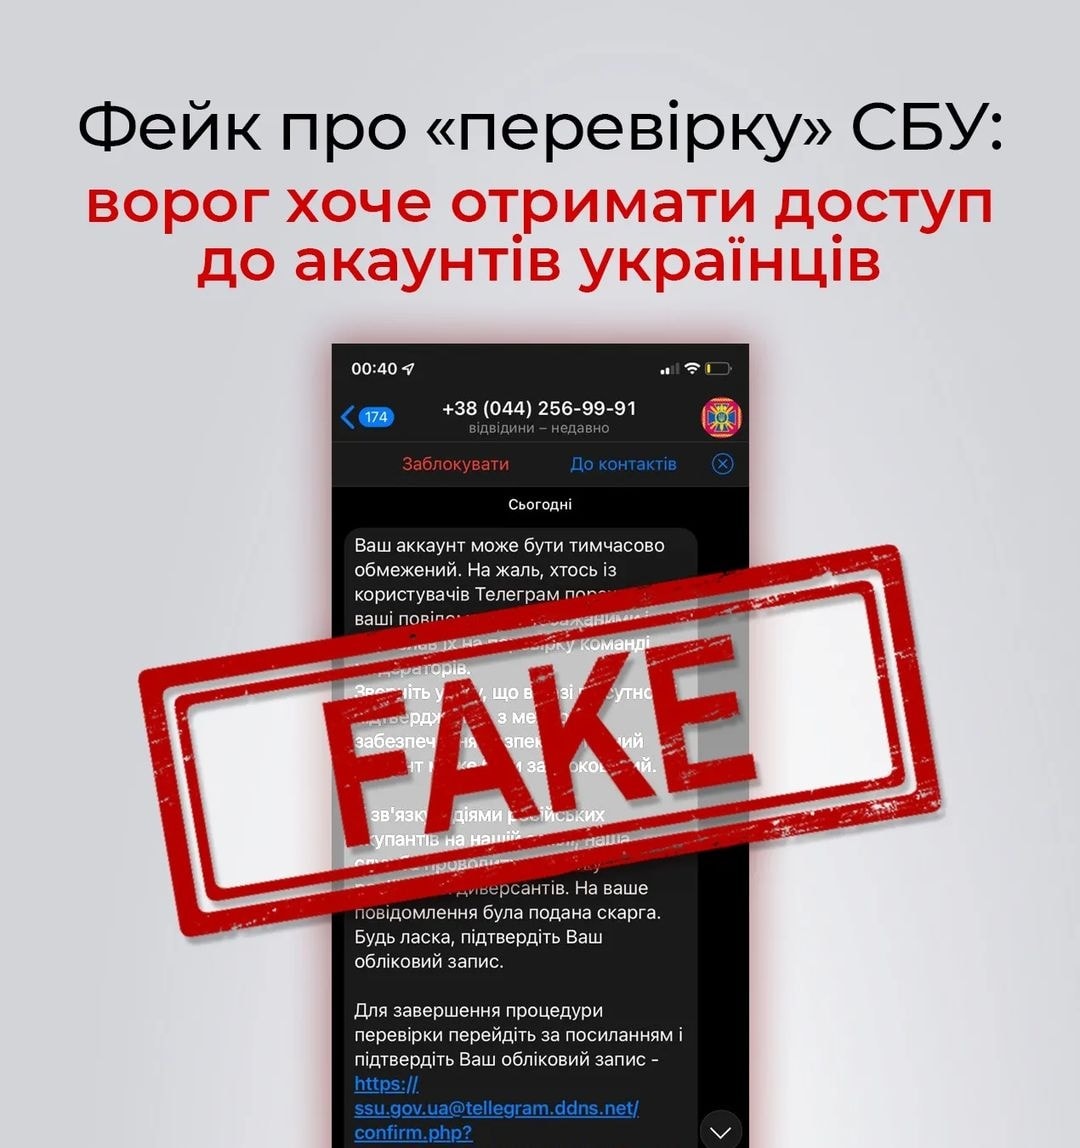 В Telegram и других мессенджерах распространяется фейк от имени СБУ